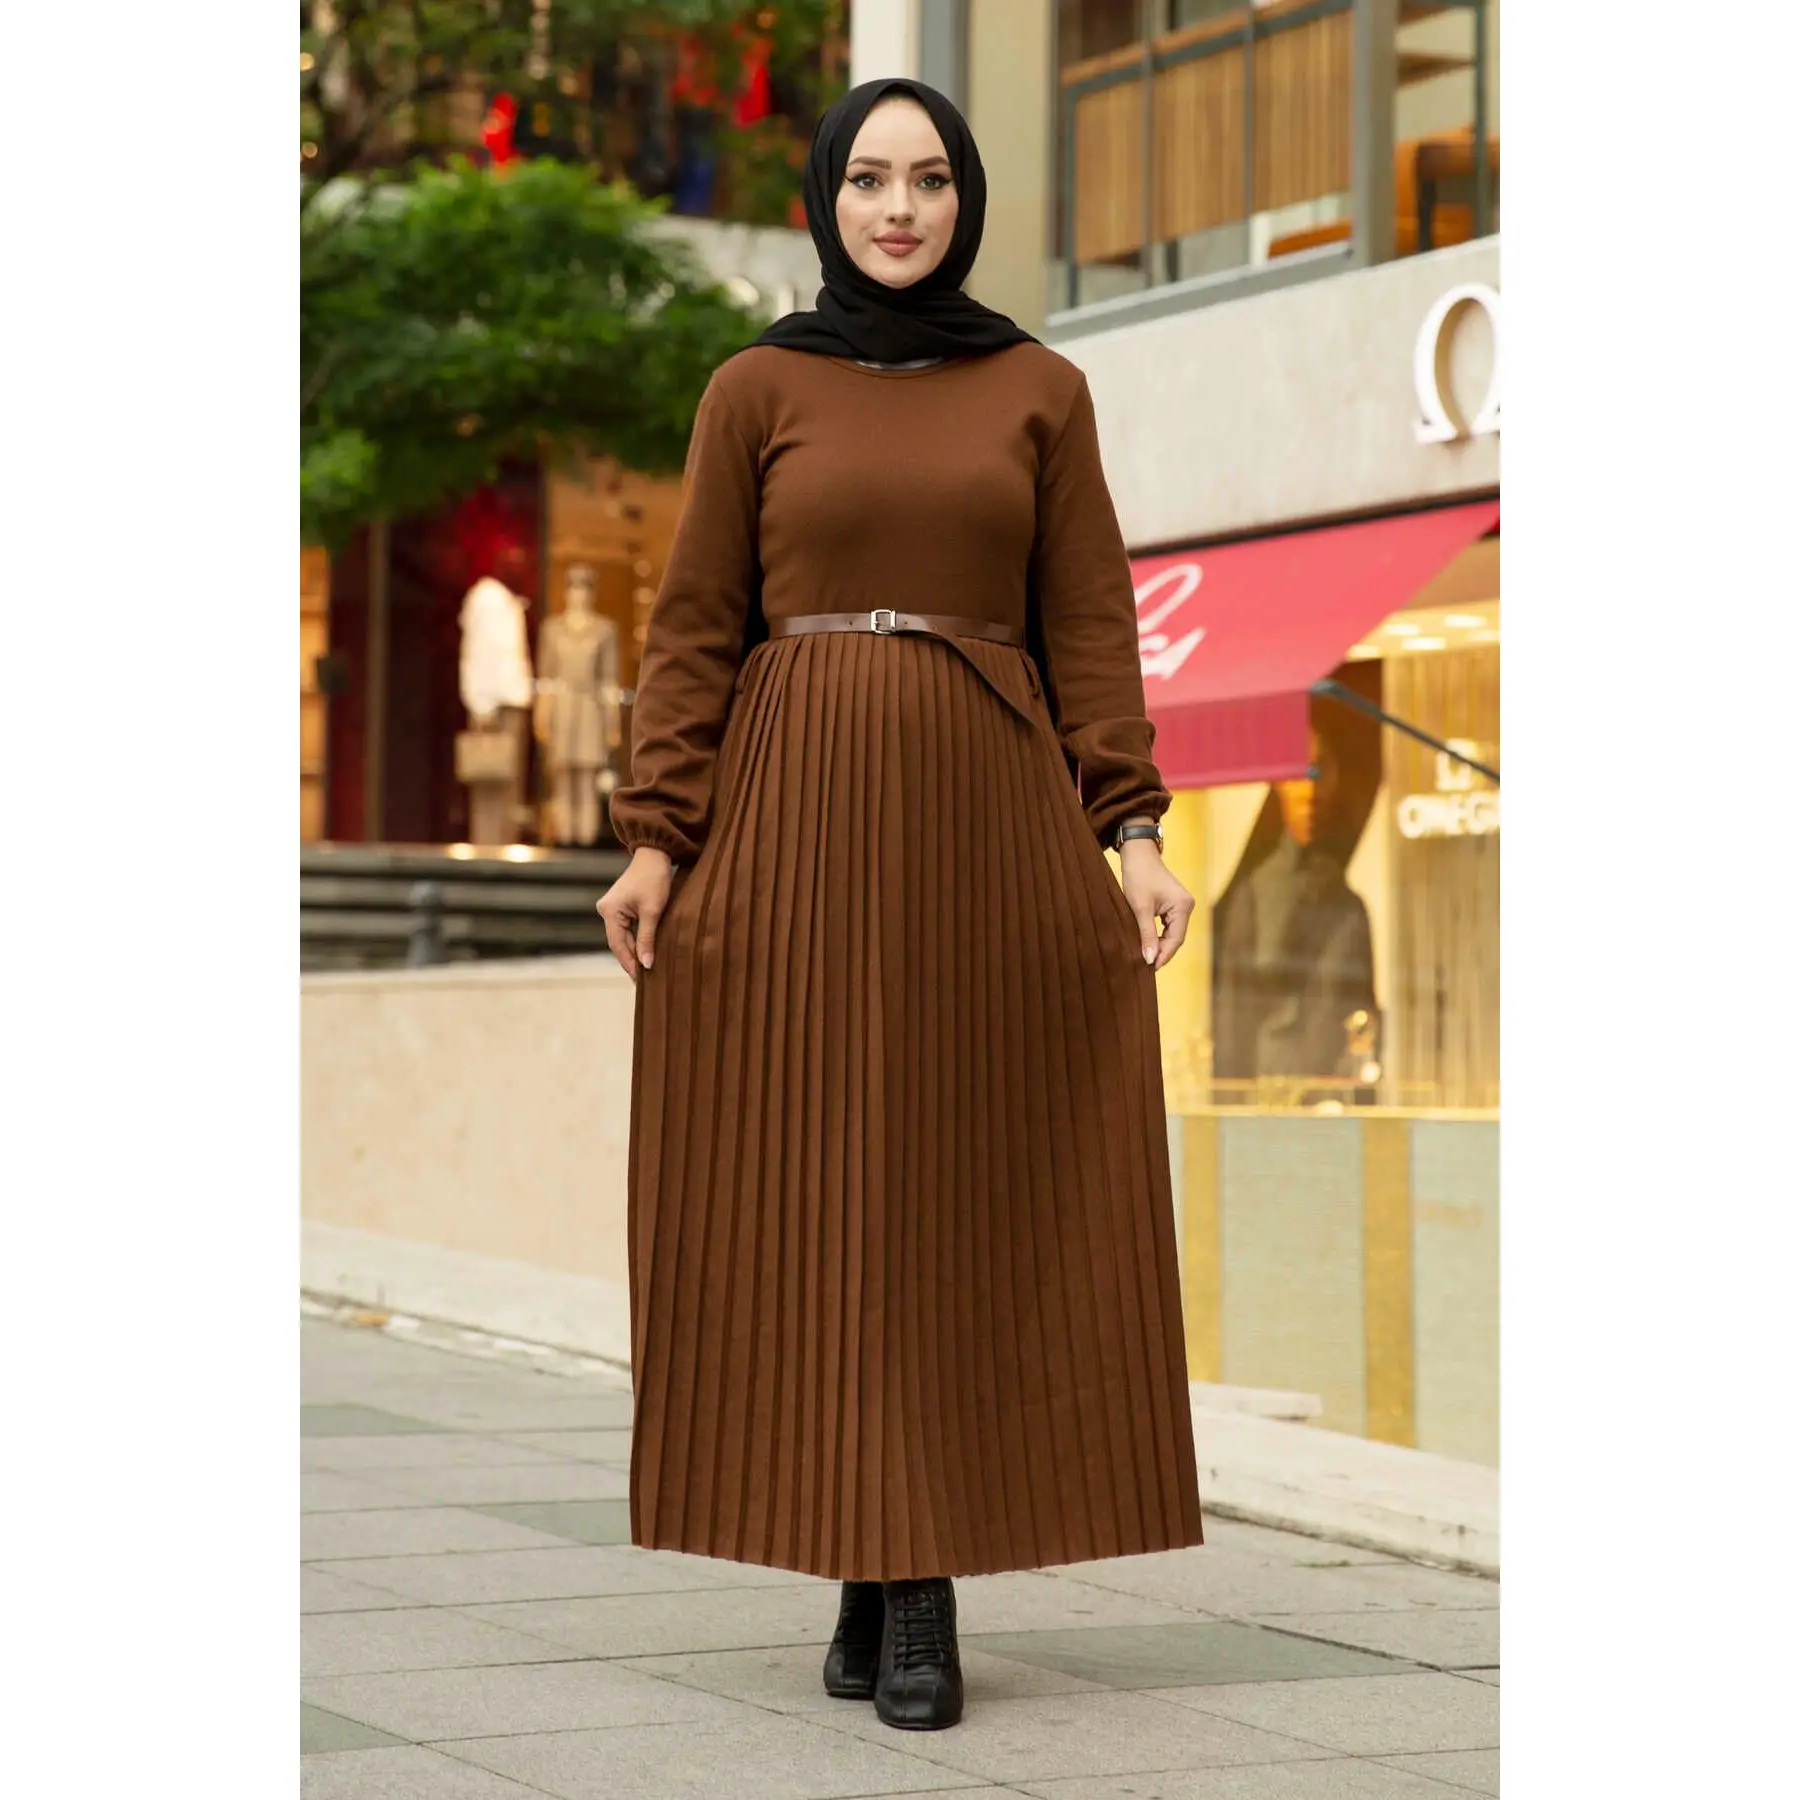 Женское платье макси с поясом, плиссированная юбка с длинными рукавами, мусульманское модное платье, Турция, Дубай, абайя 2021